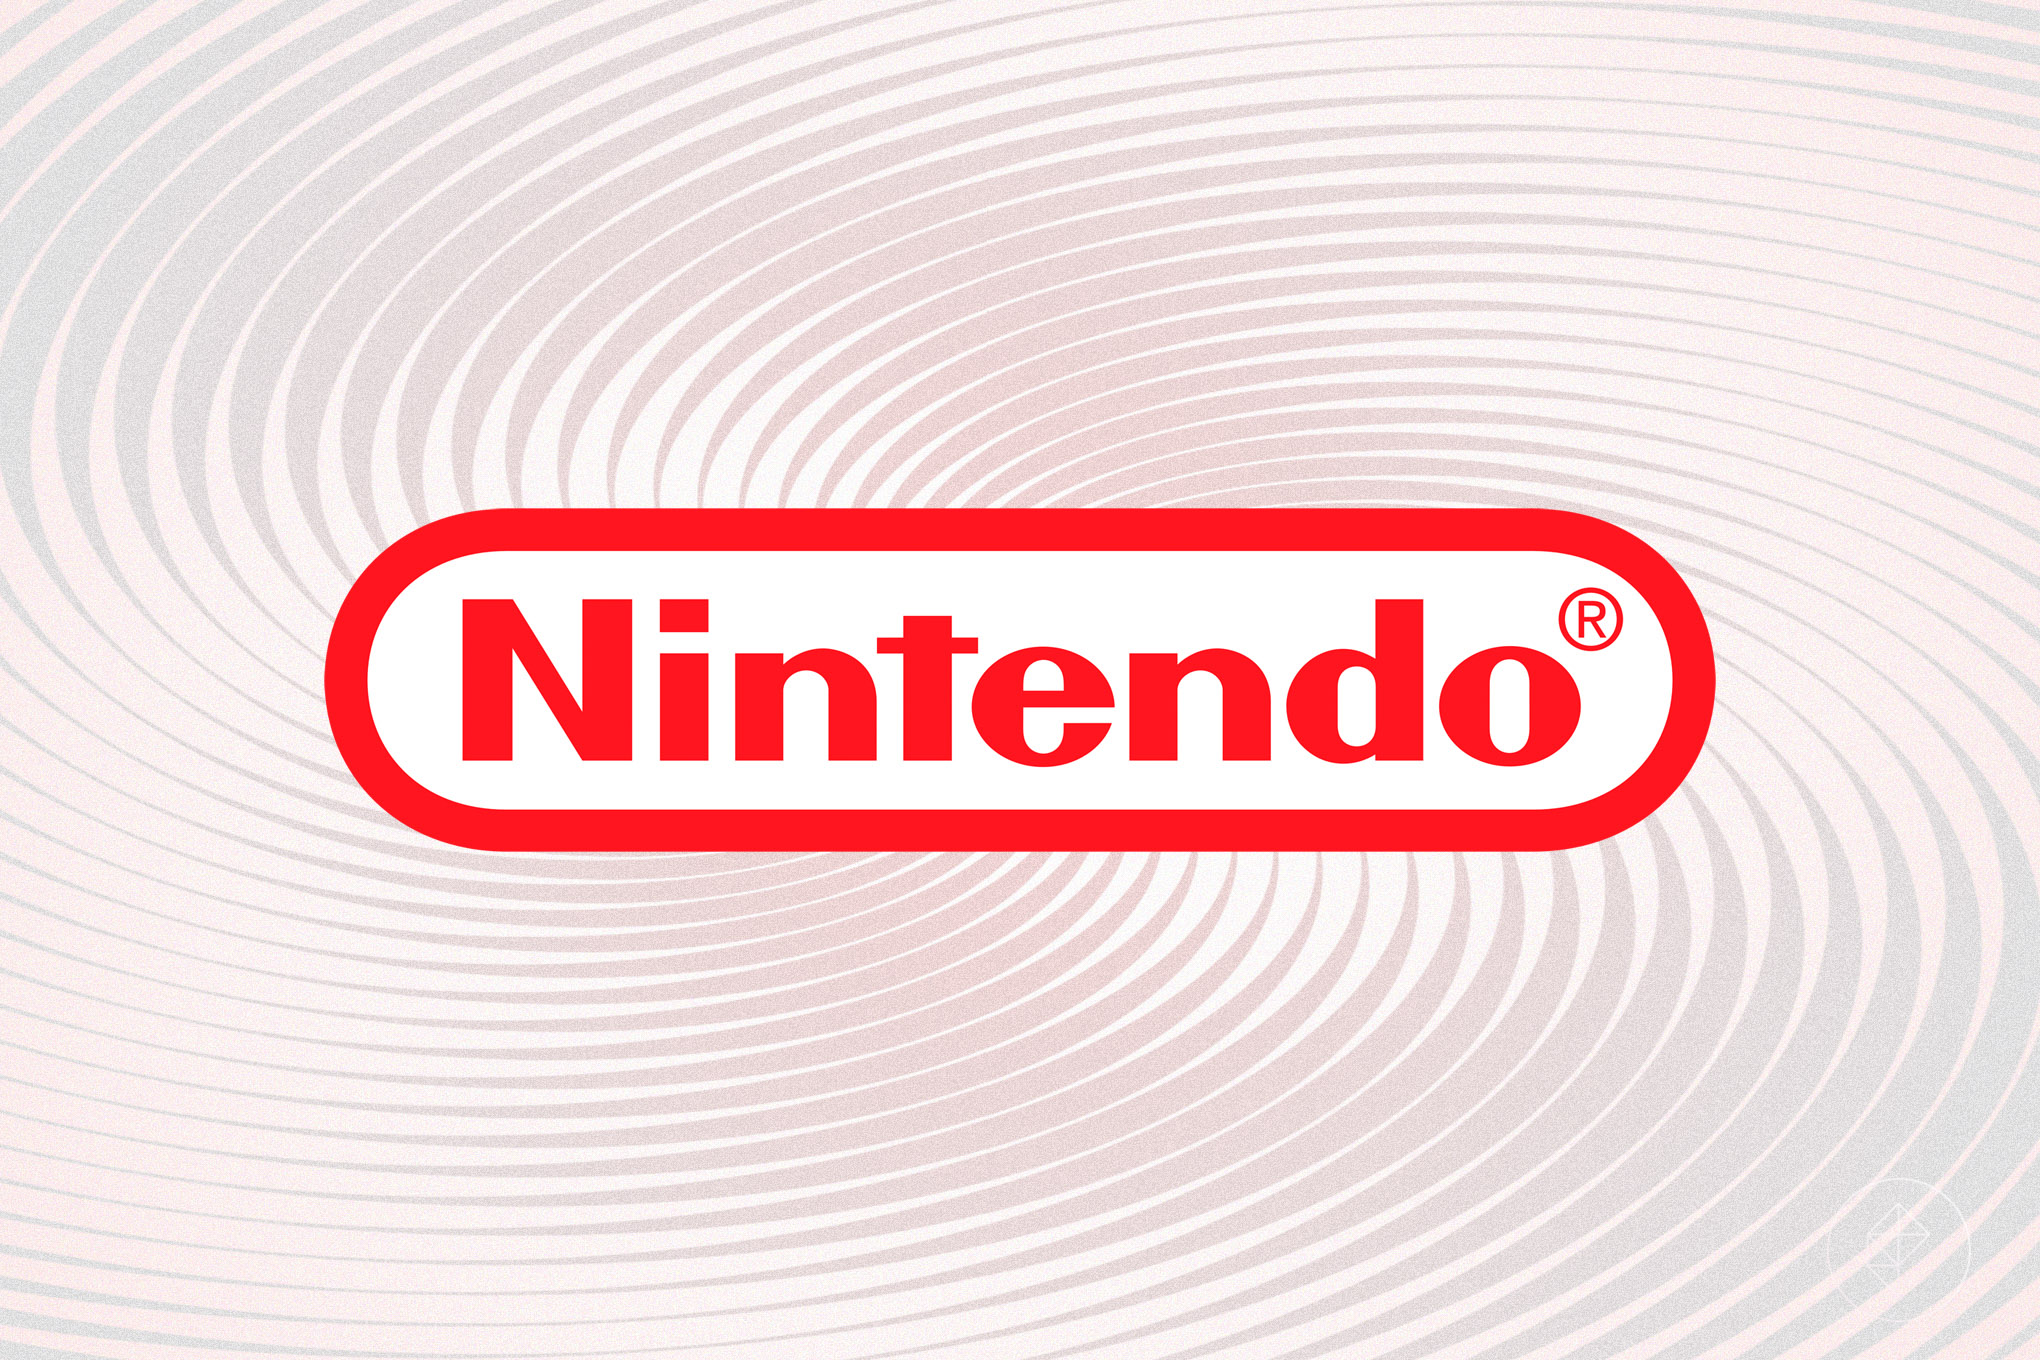 Saudi-Arabien kauft 5 % der Anteile an Nintendo für 2 US-Dollar. 98 Milliarden